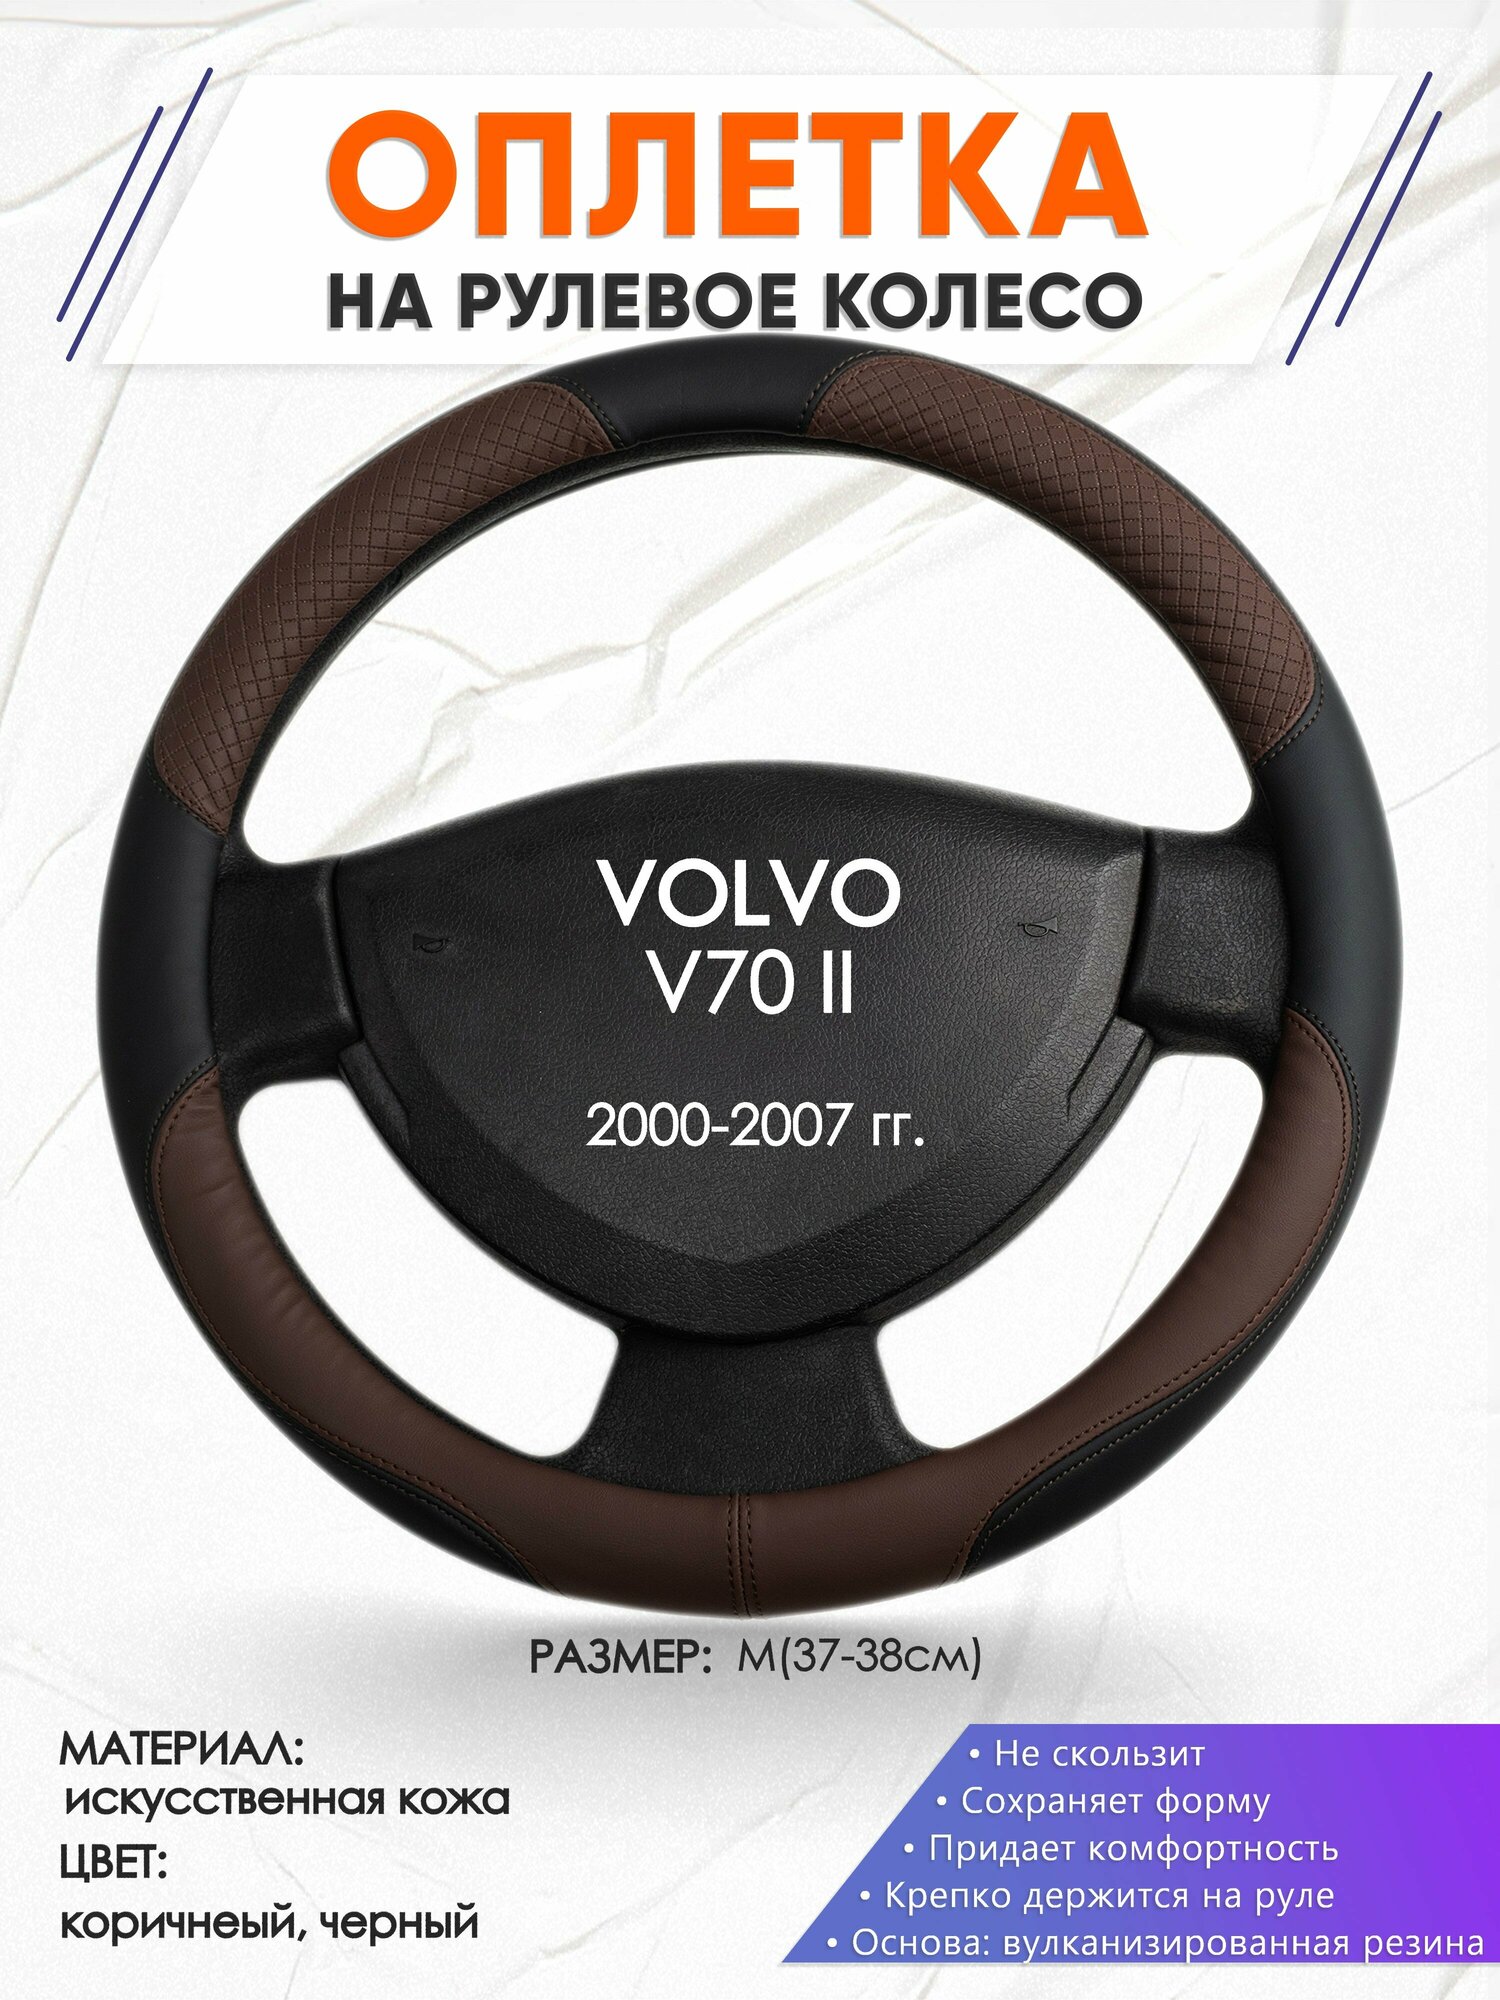 Оплетка наруль для VOLVO V70 II(Вольво в70) 2000-2007 годов выпуска, размер M(37-38см), Искусственная кожа 62